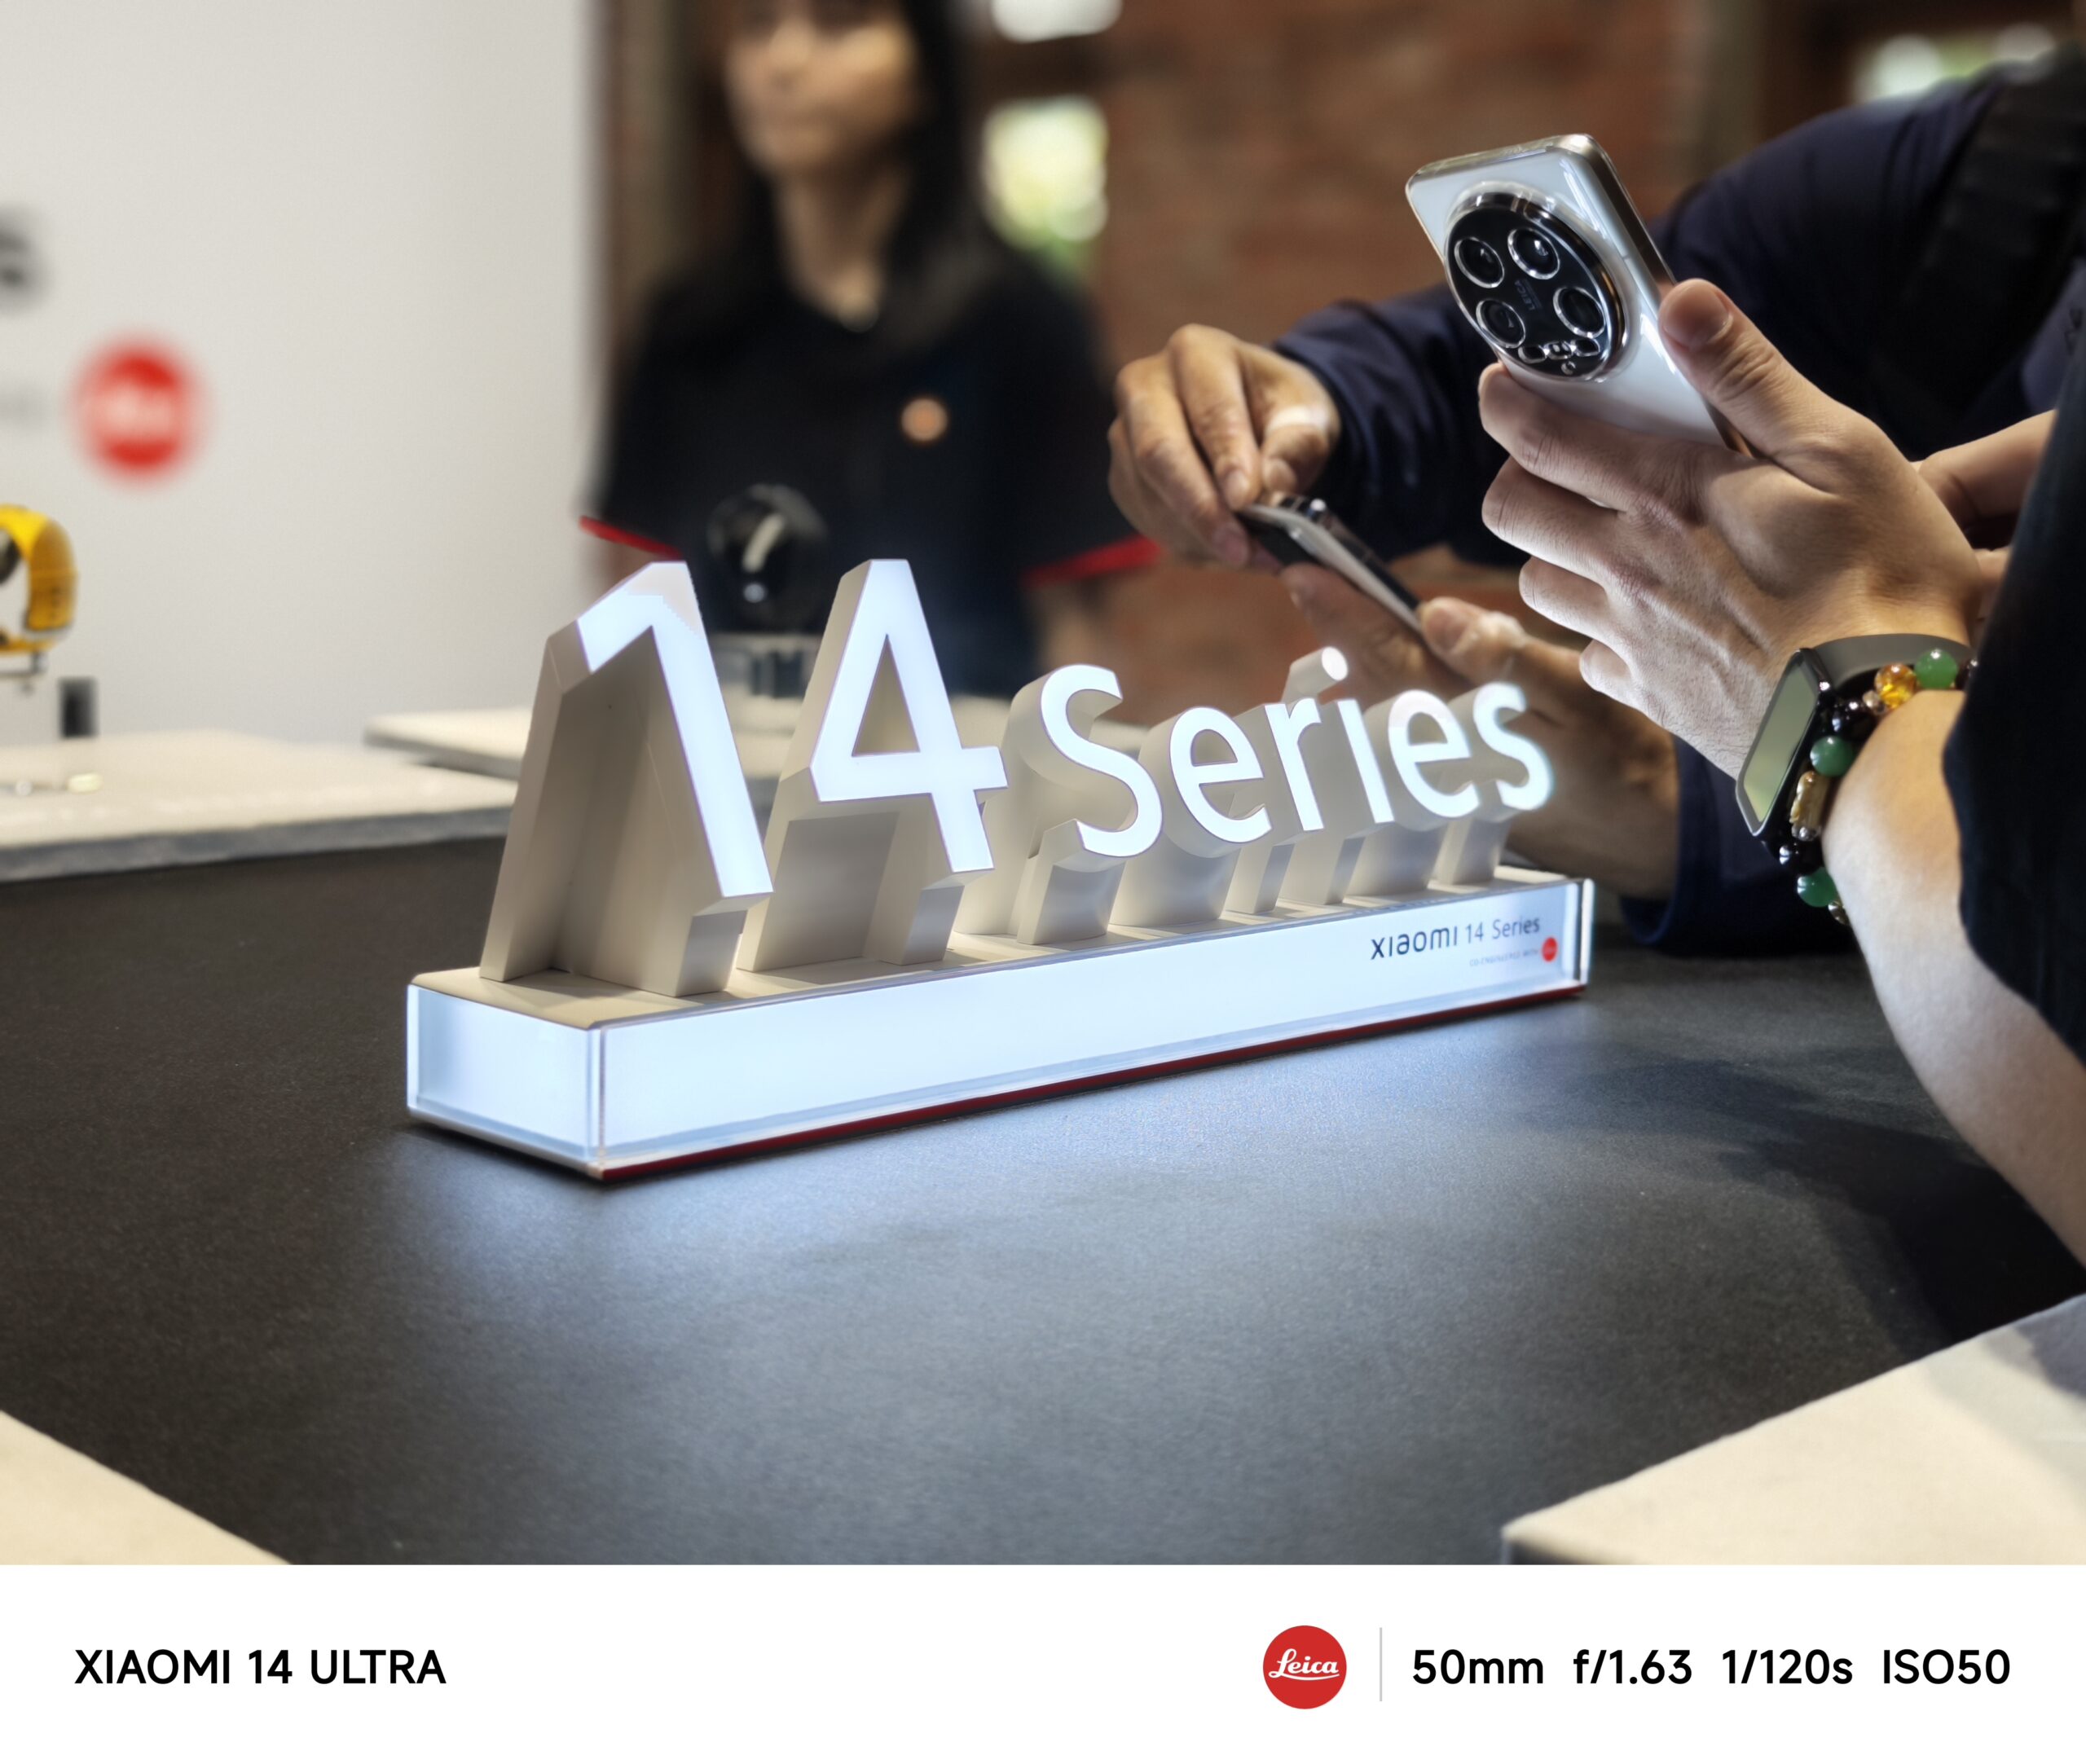 Xiaomi 14 Series 搭載徠卡全明星四鏡頭與 Summilux 光學系統 全時態、全場景精準駕馭萬千光影 @3C 達人廖阿輝